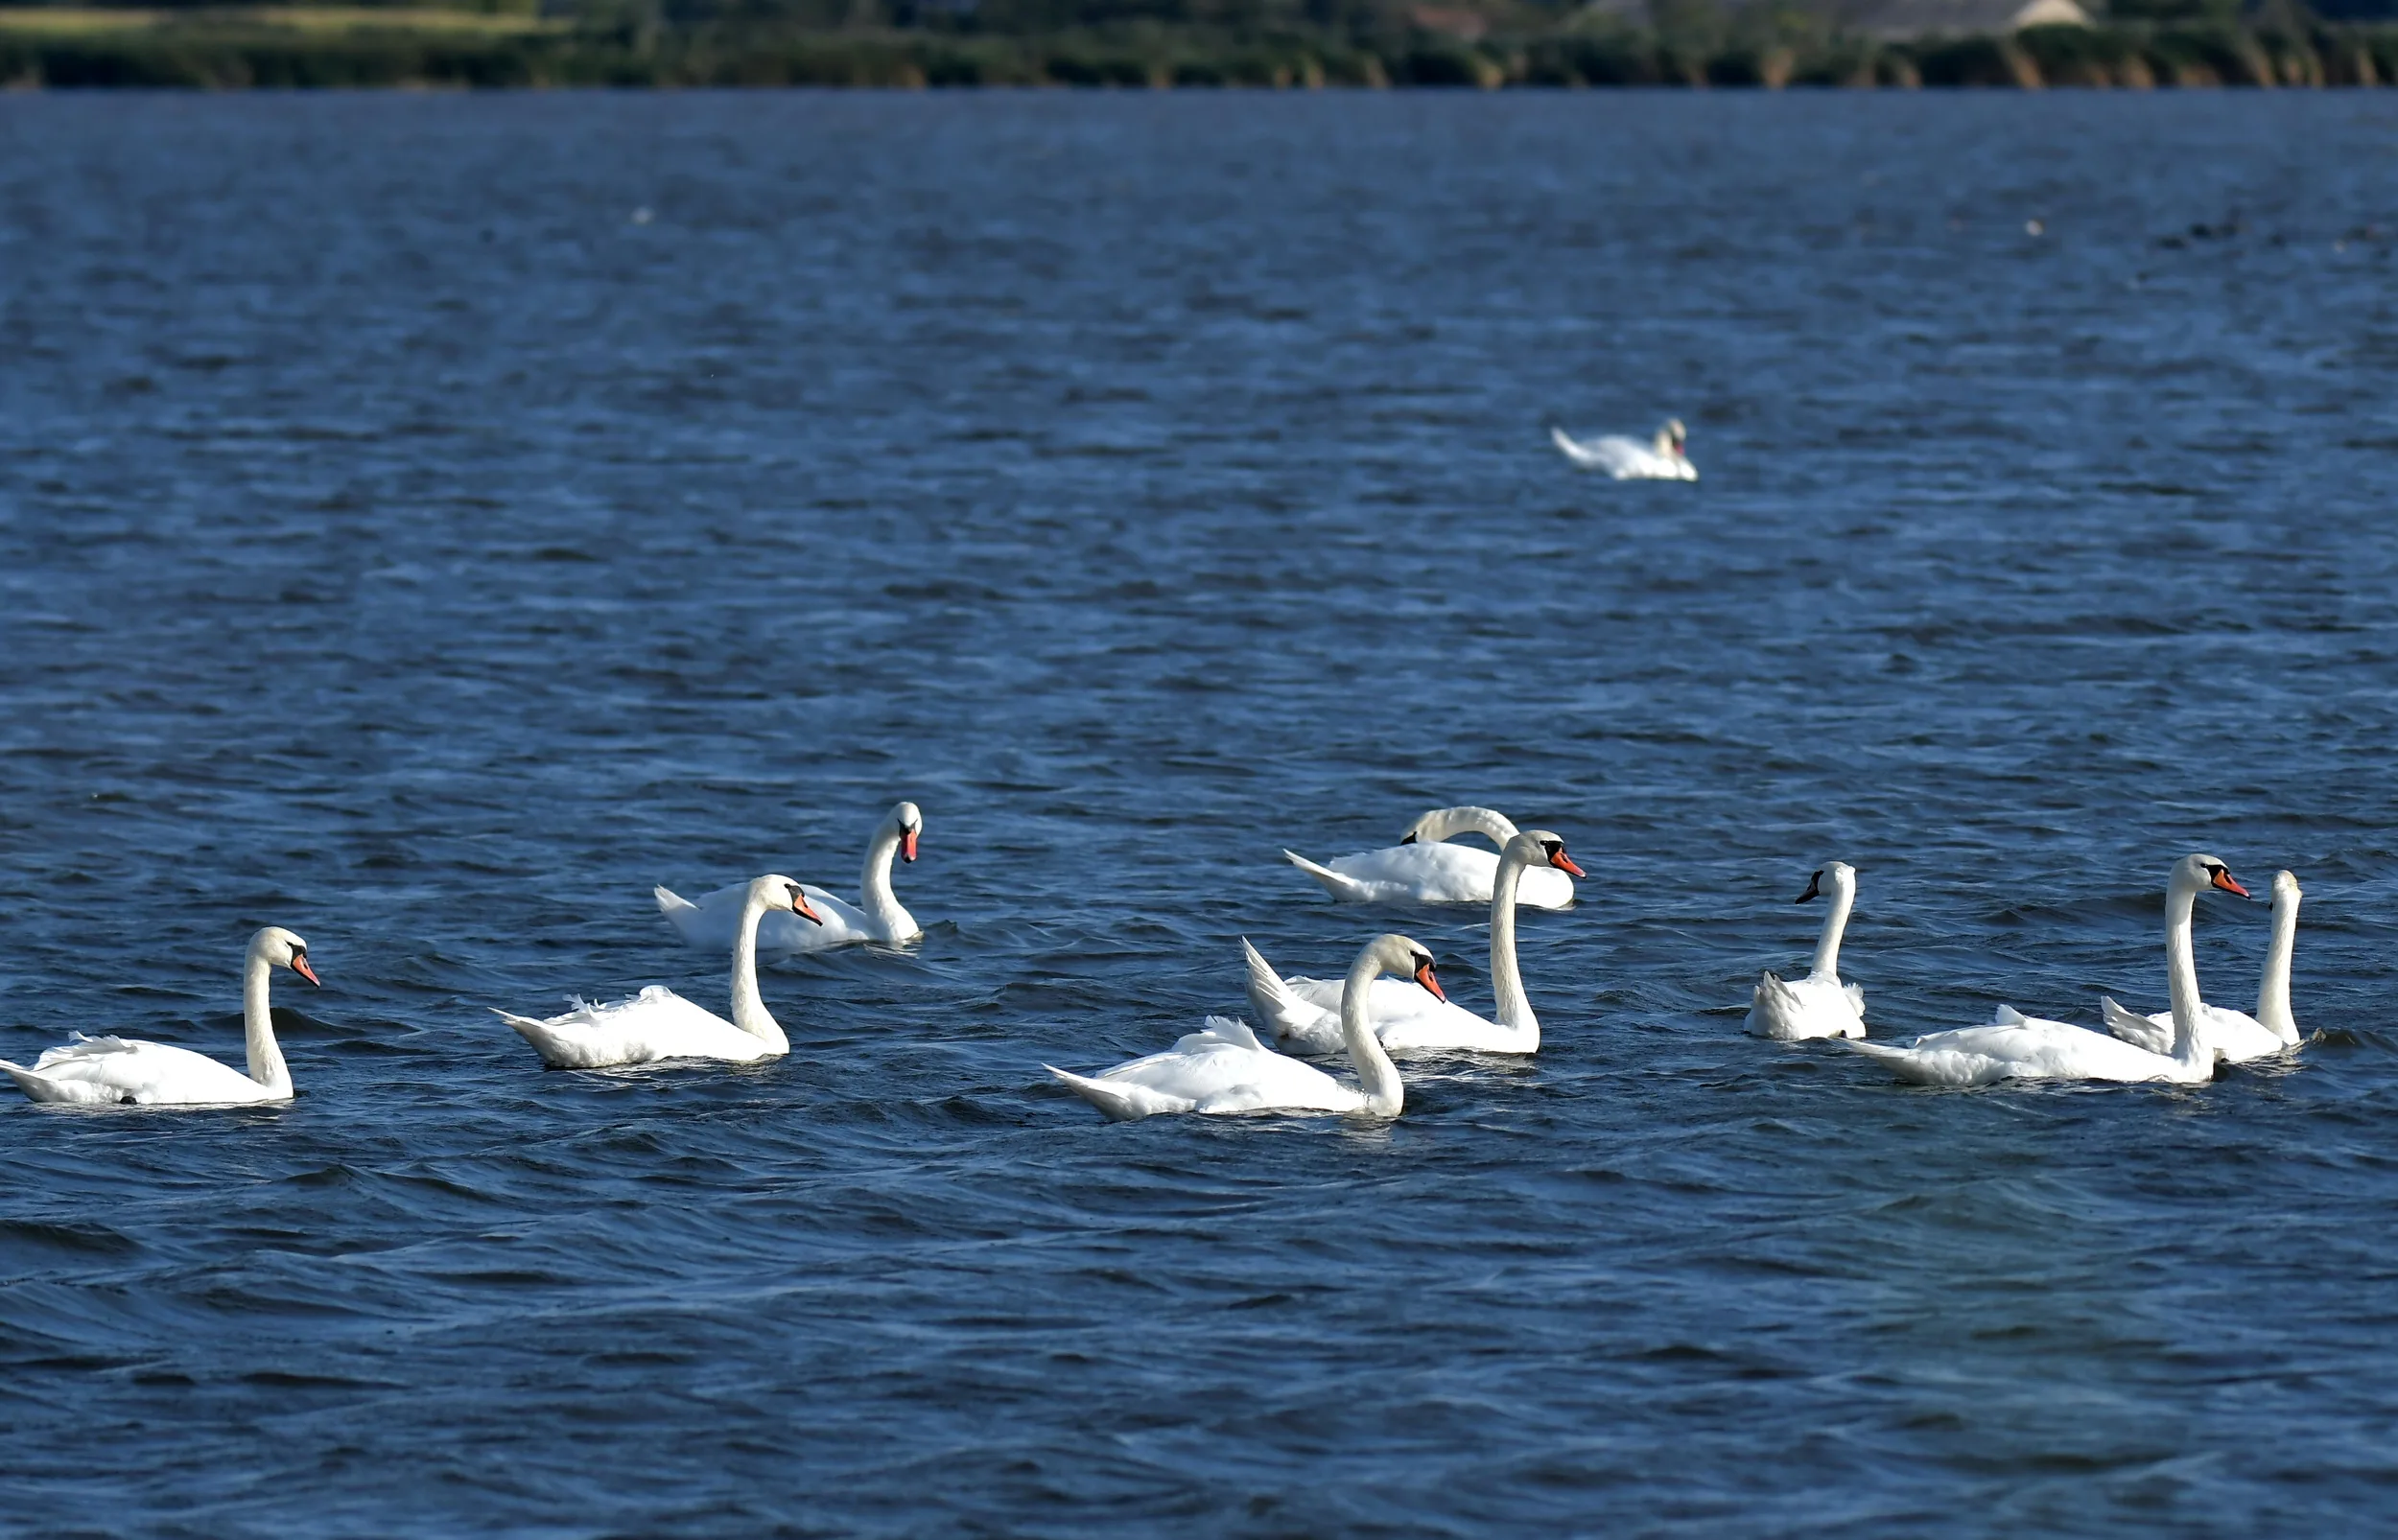 10 labudova mirno plivaju u jezeru plave boje.